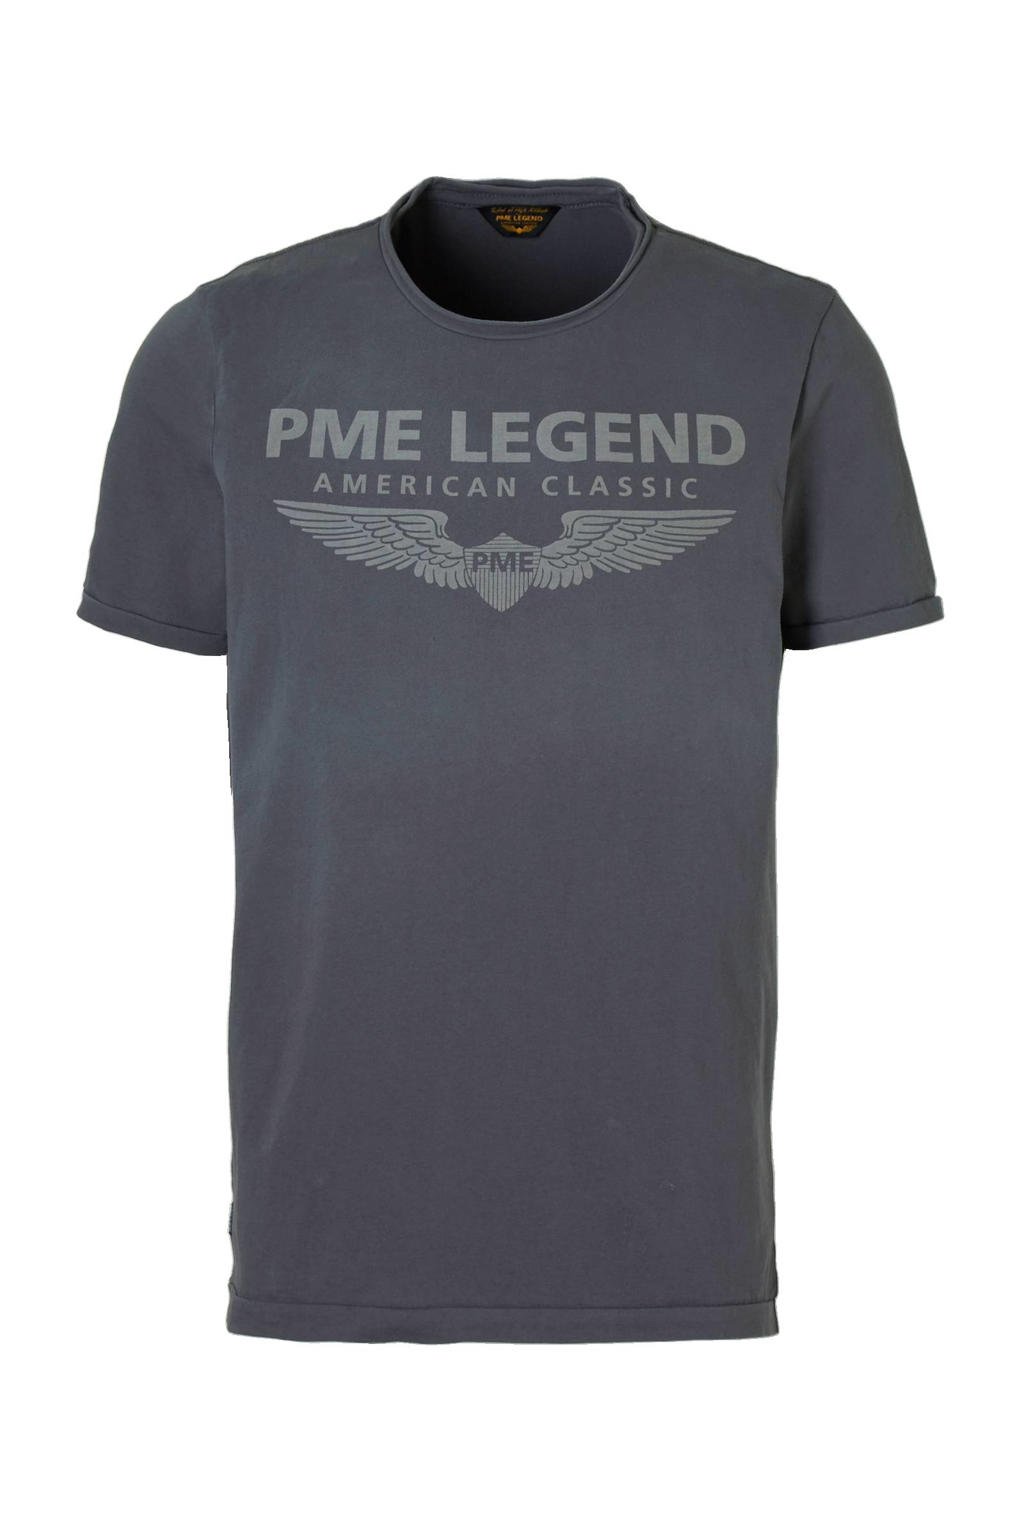 Grijze heren PME Legend T-shirt van katoen met logo dessin, korte mouwen en ronde hals